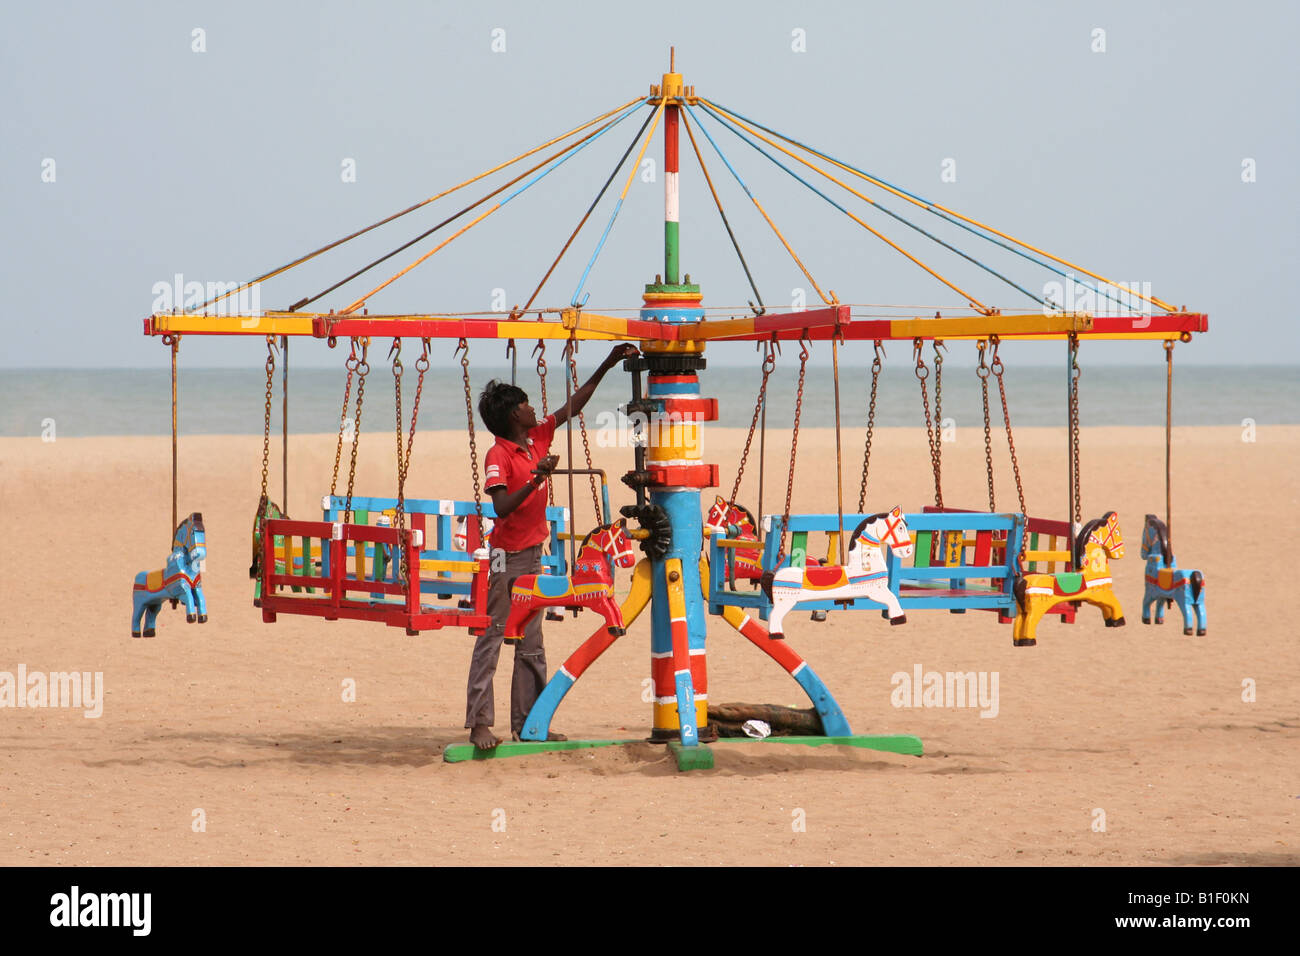 Un Indien beach commerçant installe son manège en bois coloré en fin d'après-midi soleil Banque D'Images